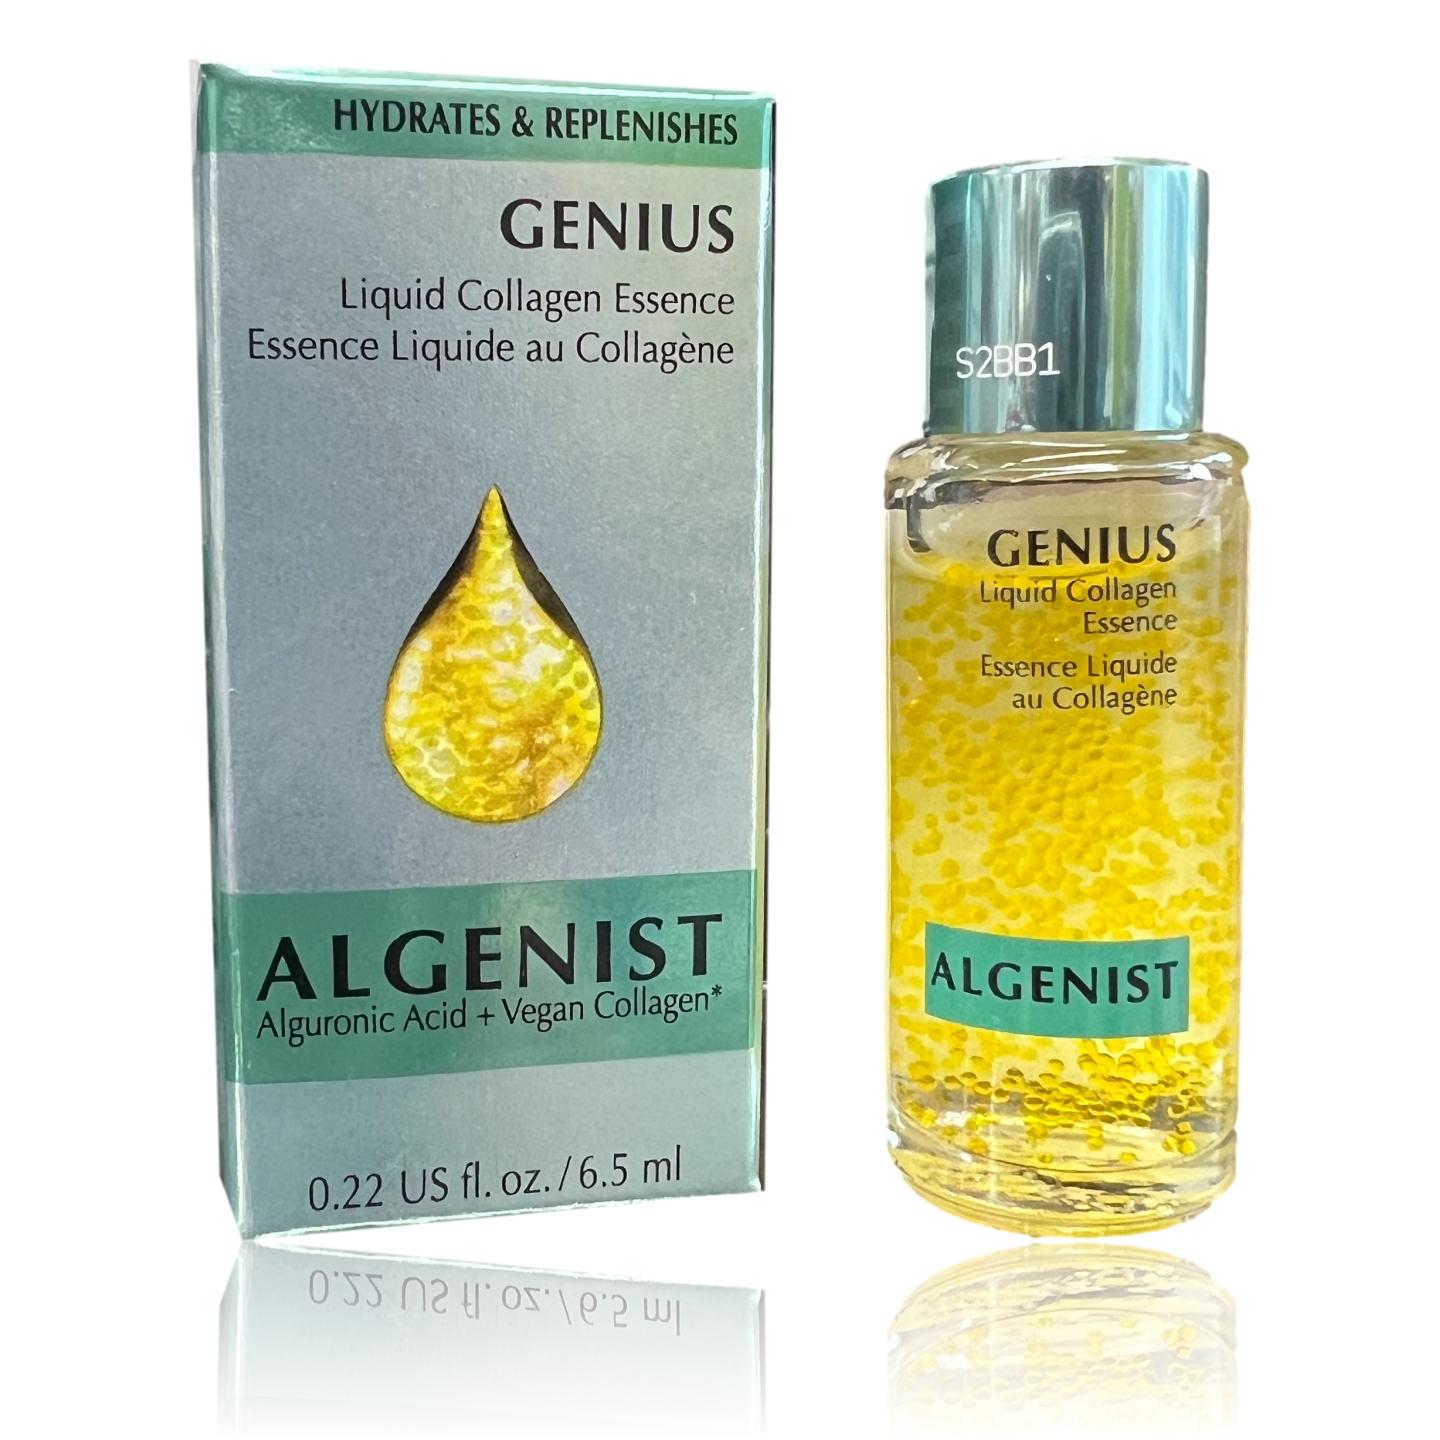 Algenist GENIUS Liquid Collagen Mini - Vegan, Plant-Based Collagen Dropper with Vitamin E & Omega 3, 6 & 9 - Active Anti-Aging Formula - Non-Comedogenic & Hypoallergenic Skincare (6.2ml / 0.21oz)